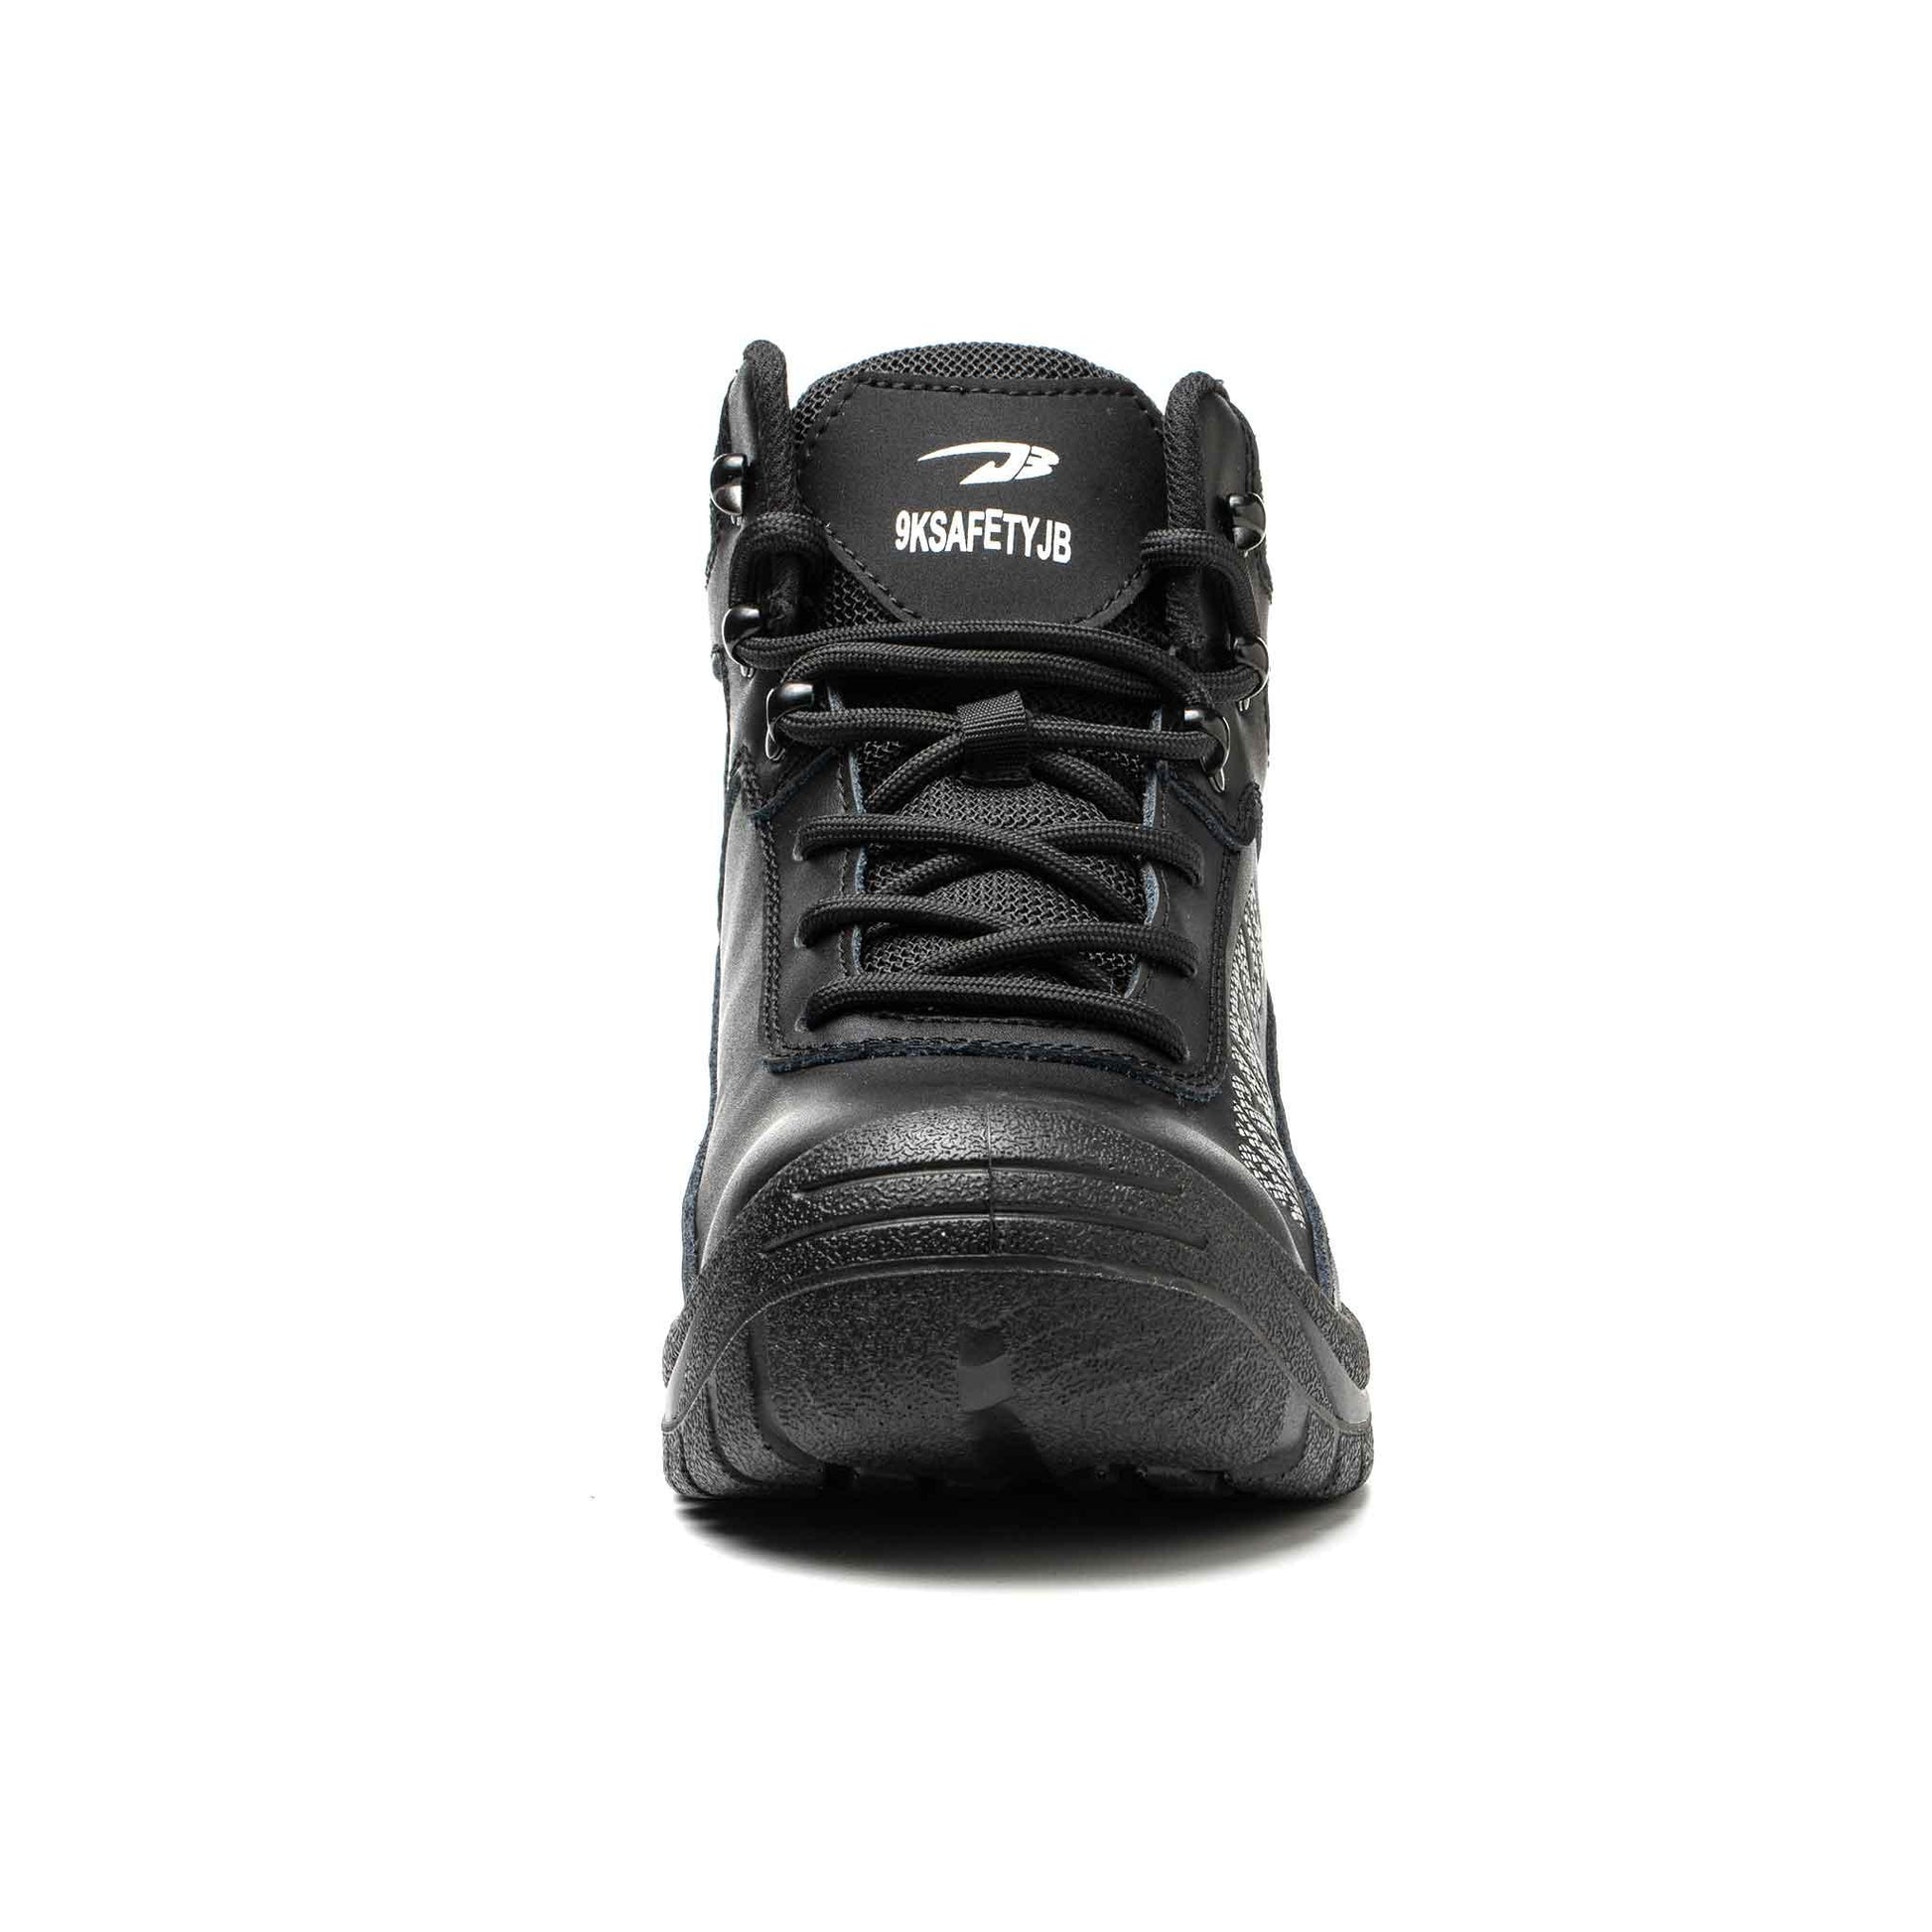 Women's Steel Toe Work Boot - Waterproof | B199 - USINE PRO Footwear